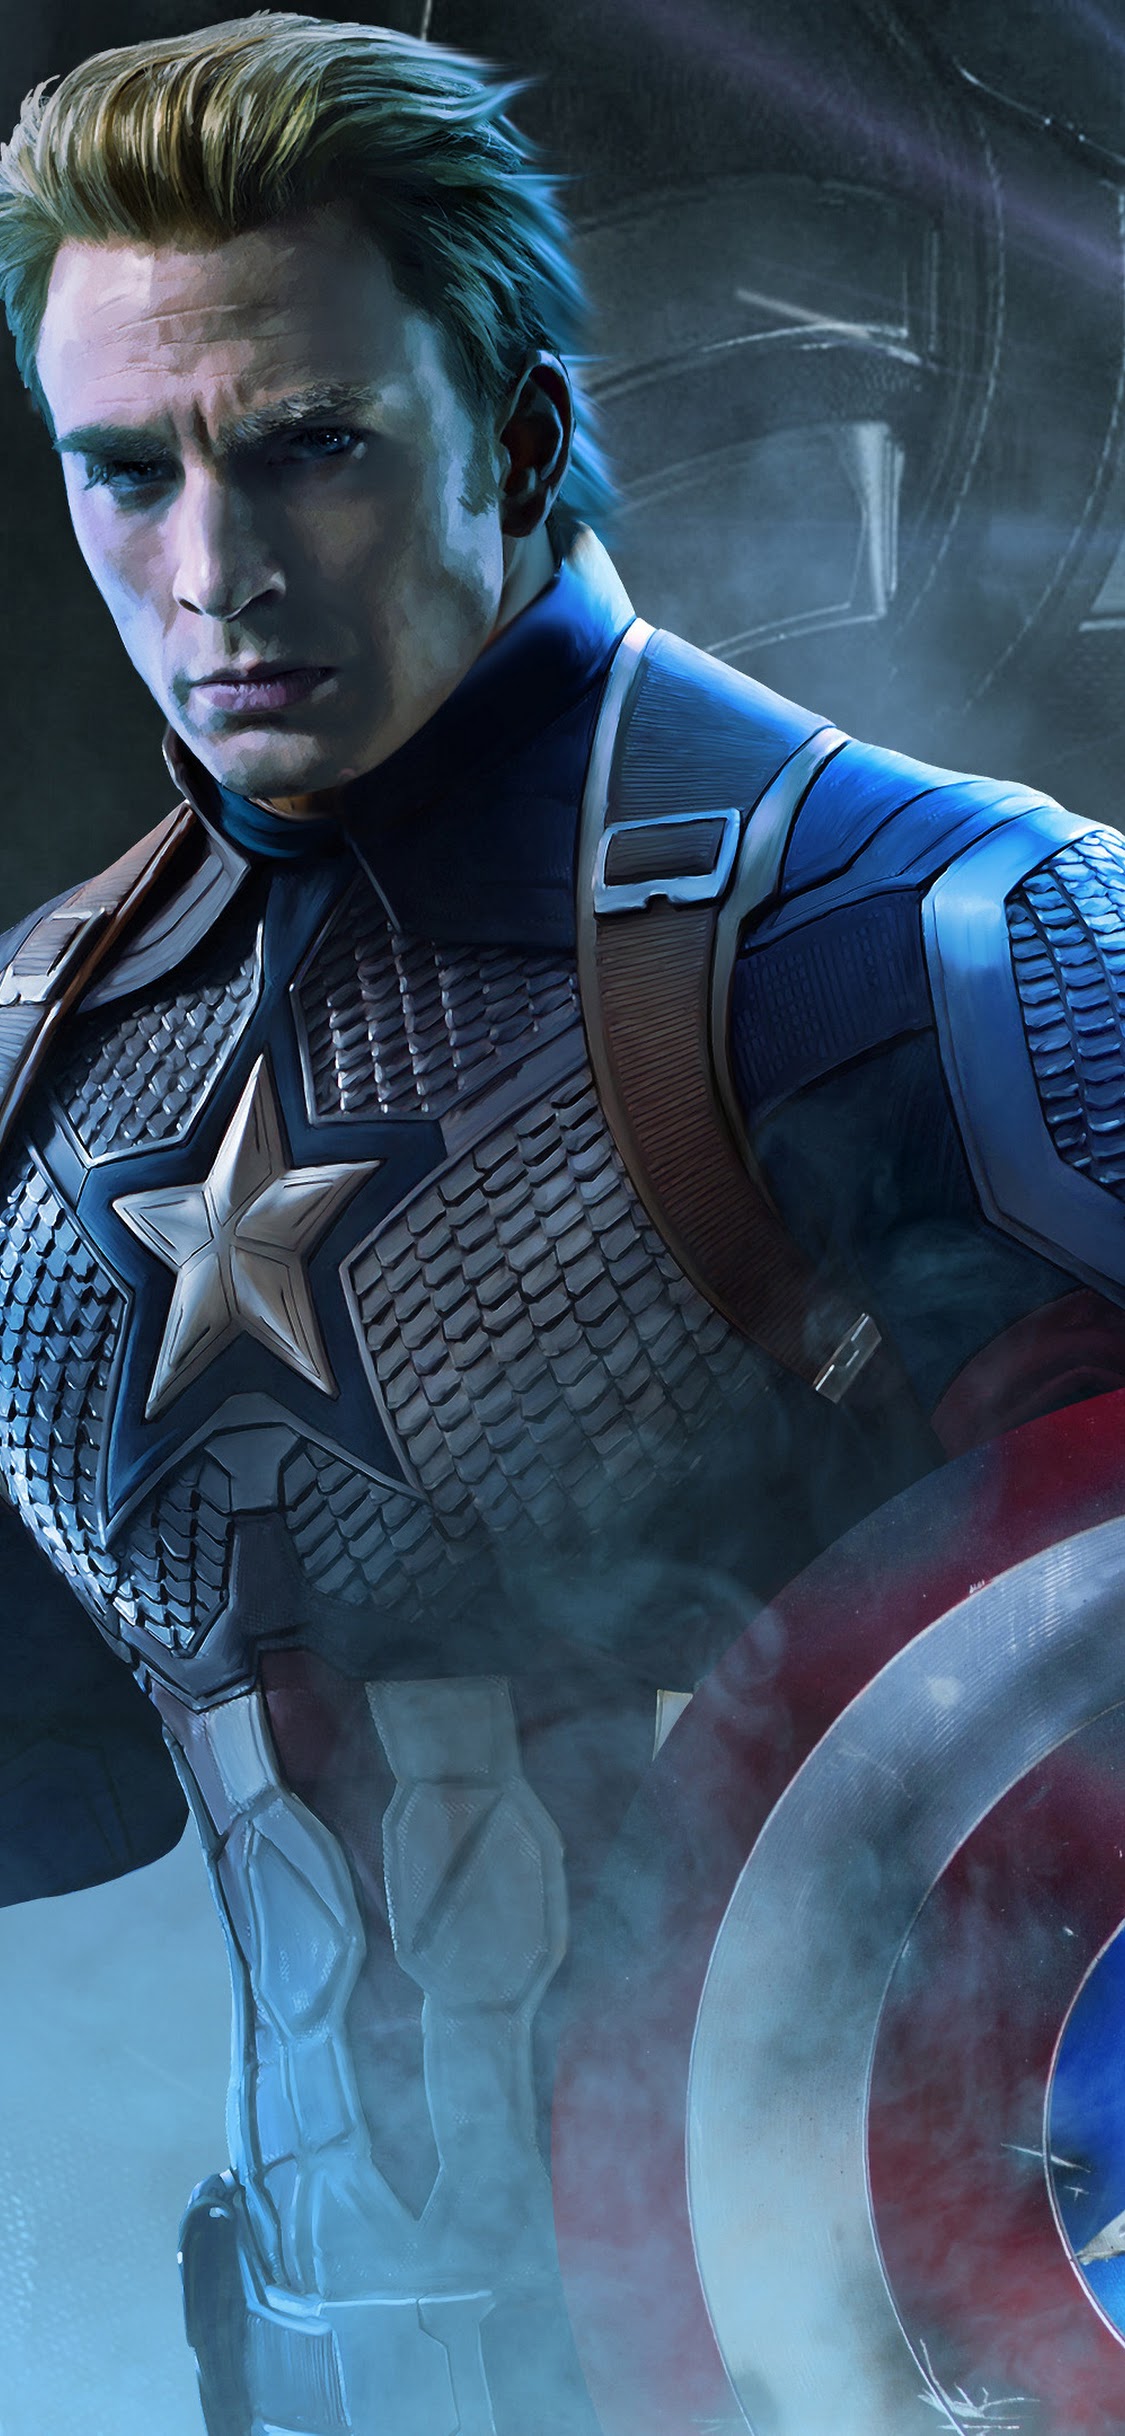 Endgame, Captain America, 4k, - Avengers Endgame Captain America -  1125x2436 Wallpaper 